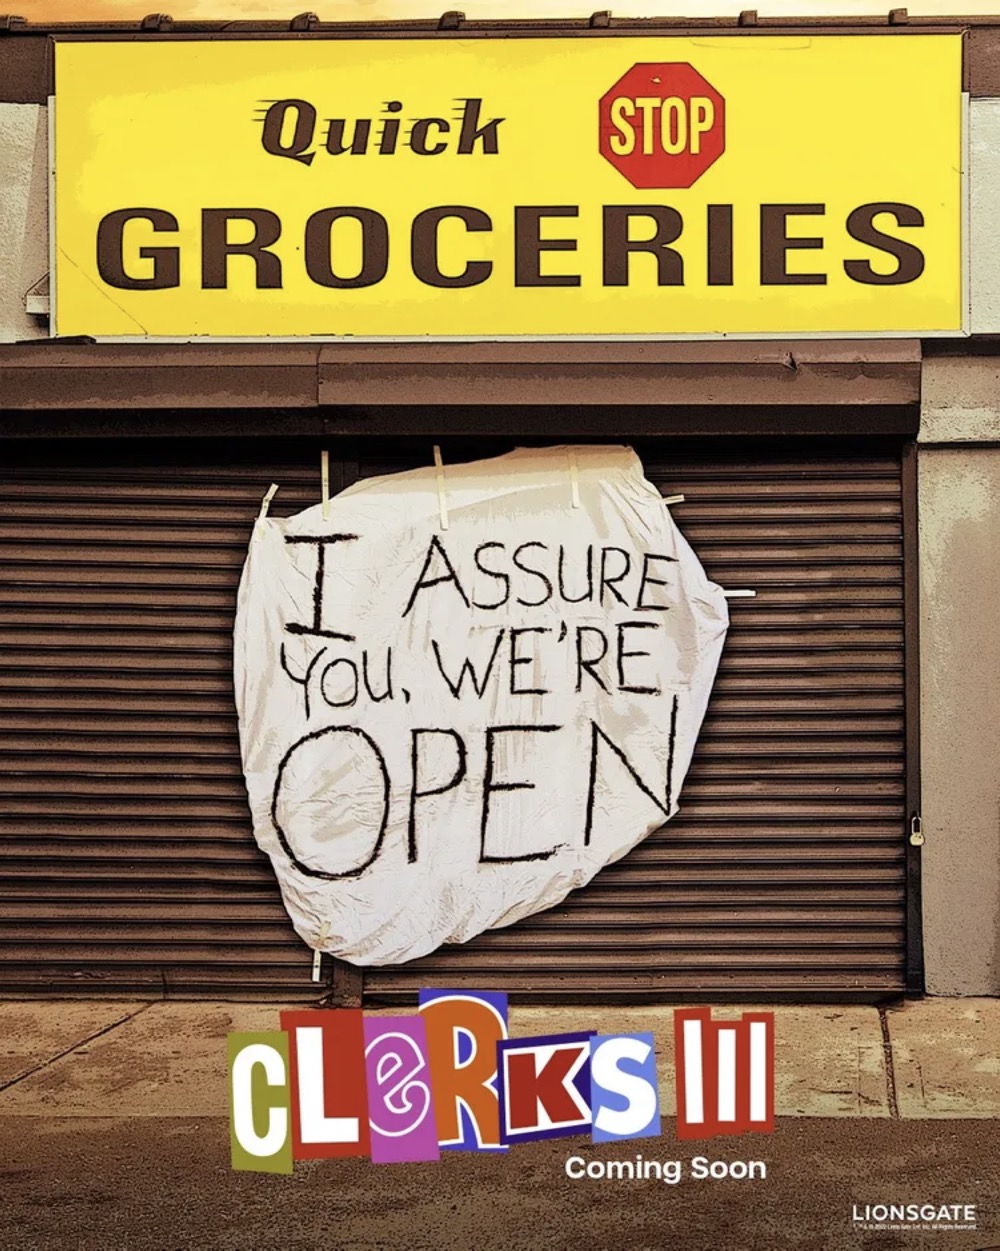 clerks 3 poster 1